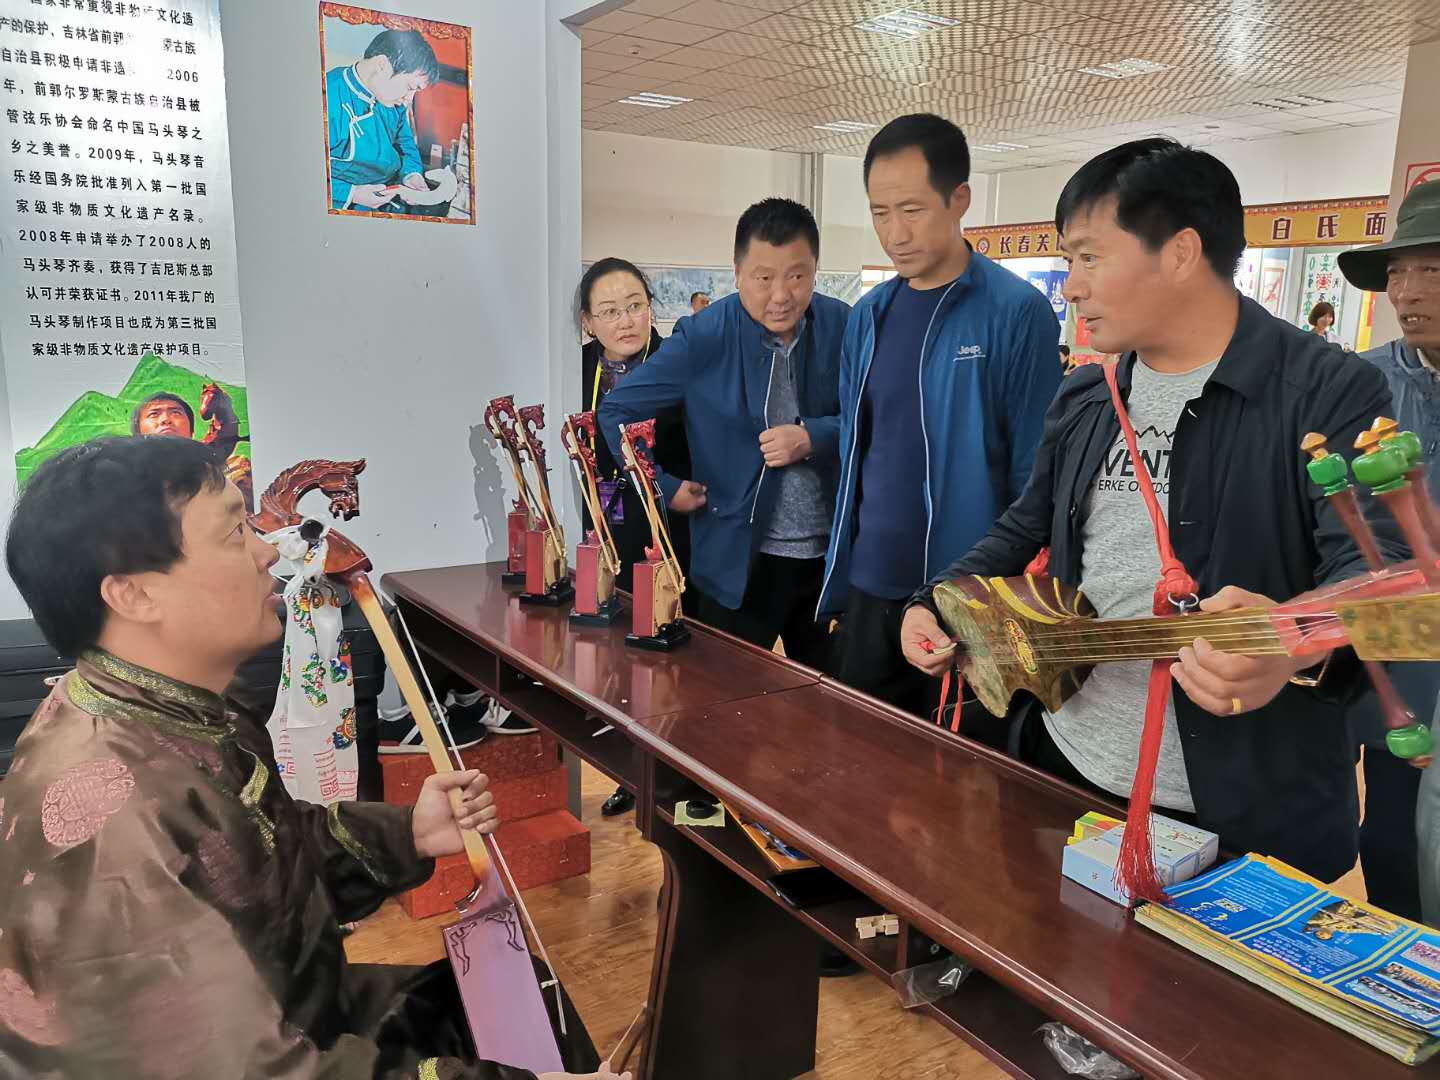 Небольшие виды рукоделия и ремесел, великие литературные сочинения и духовное наследие провинции Цзилинь, передающиеся через поколения, были представлены на 17-м культурно-туристическом фестивале Джомолунгма в тибетском городе Шигацзе